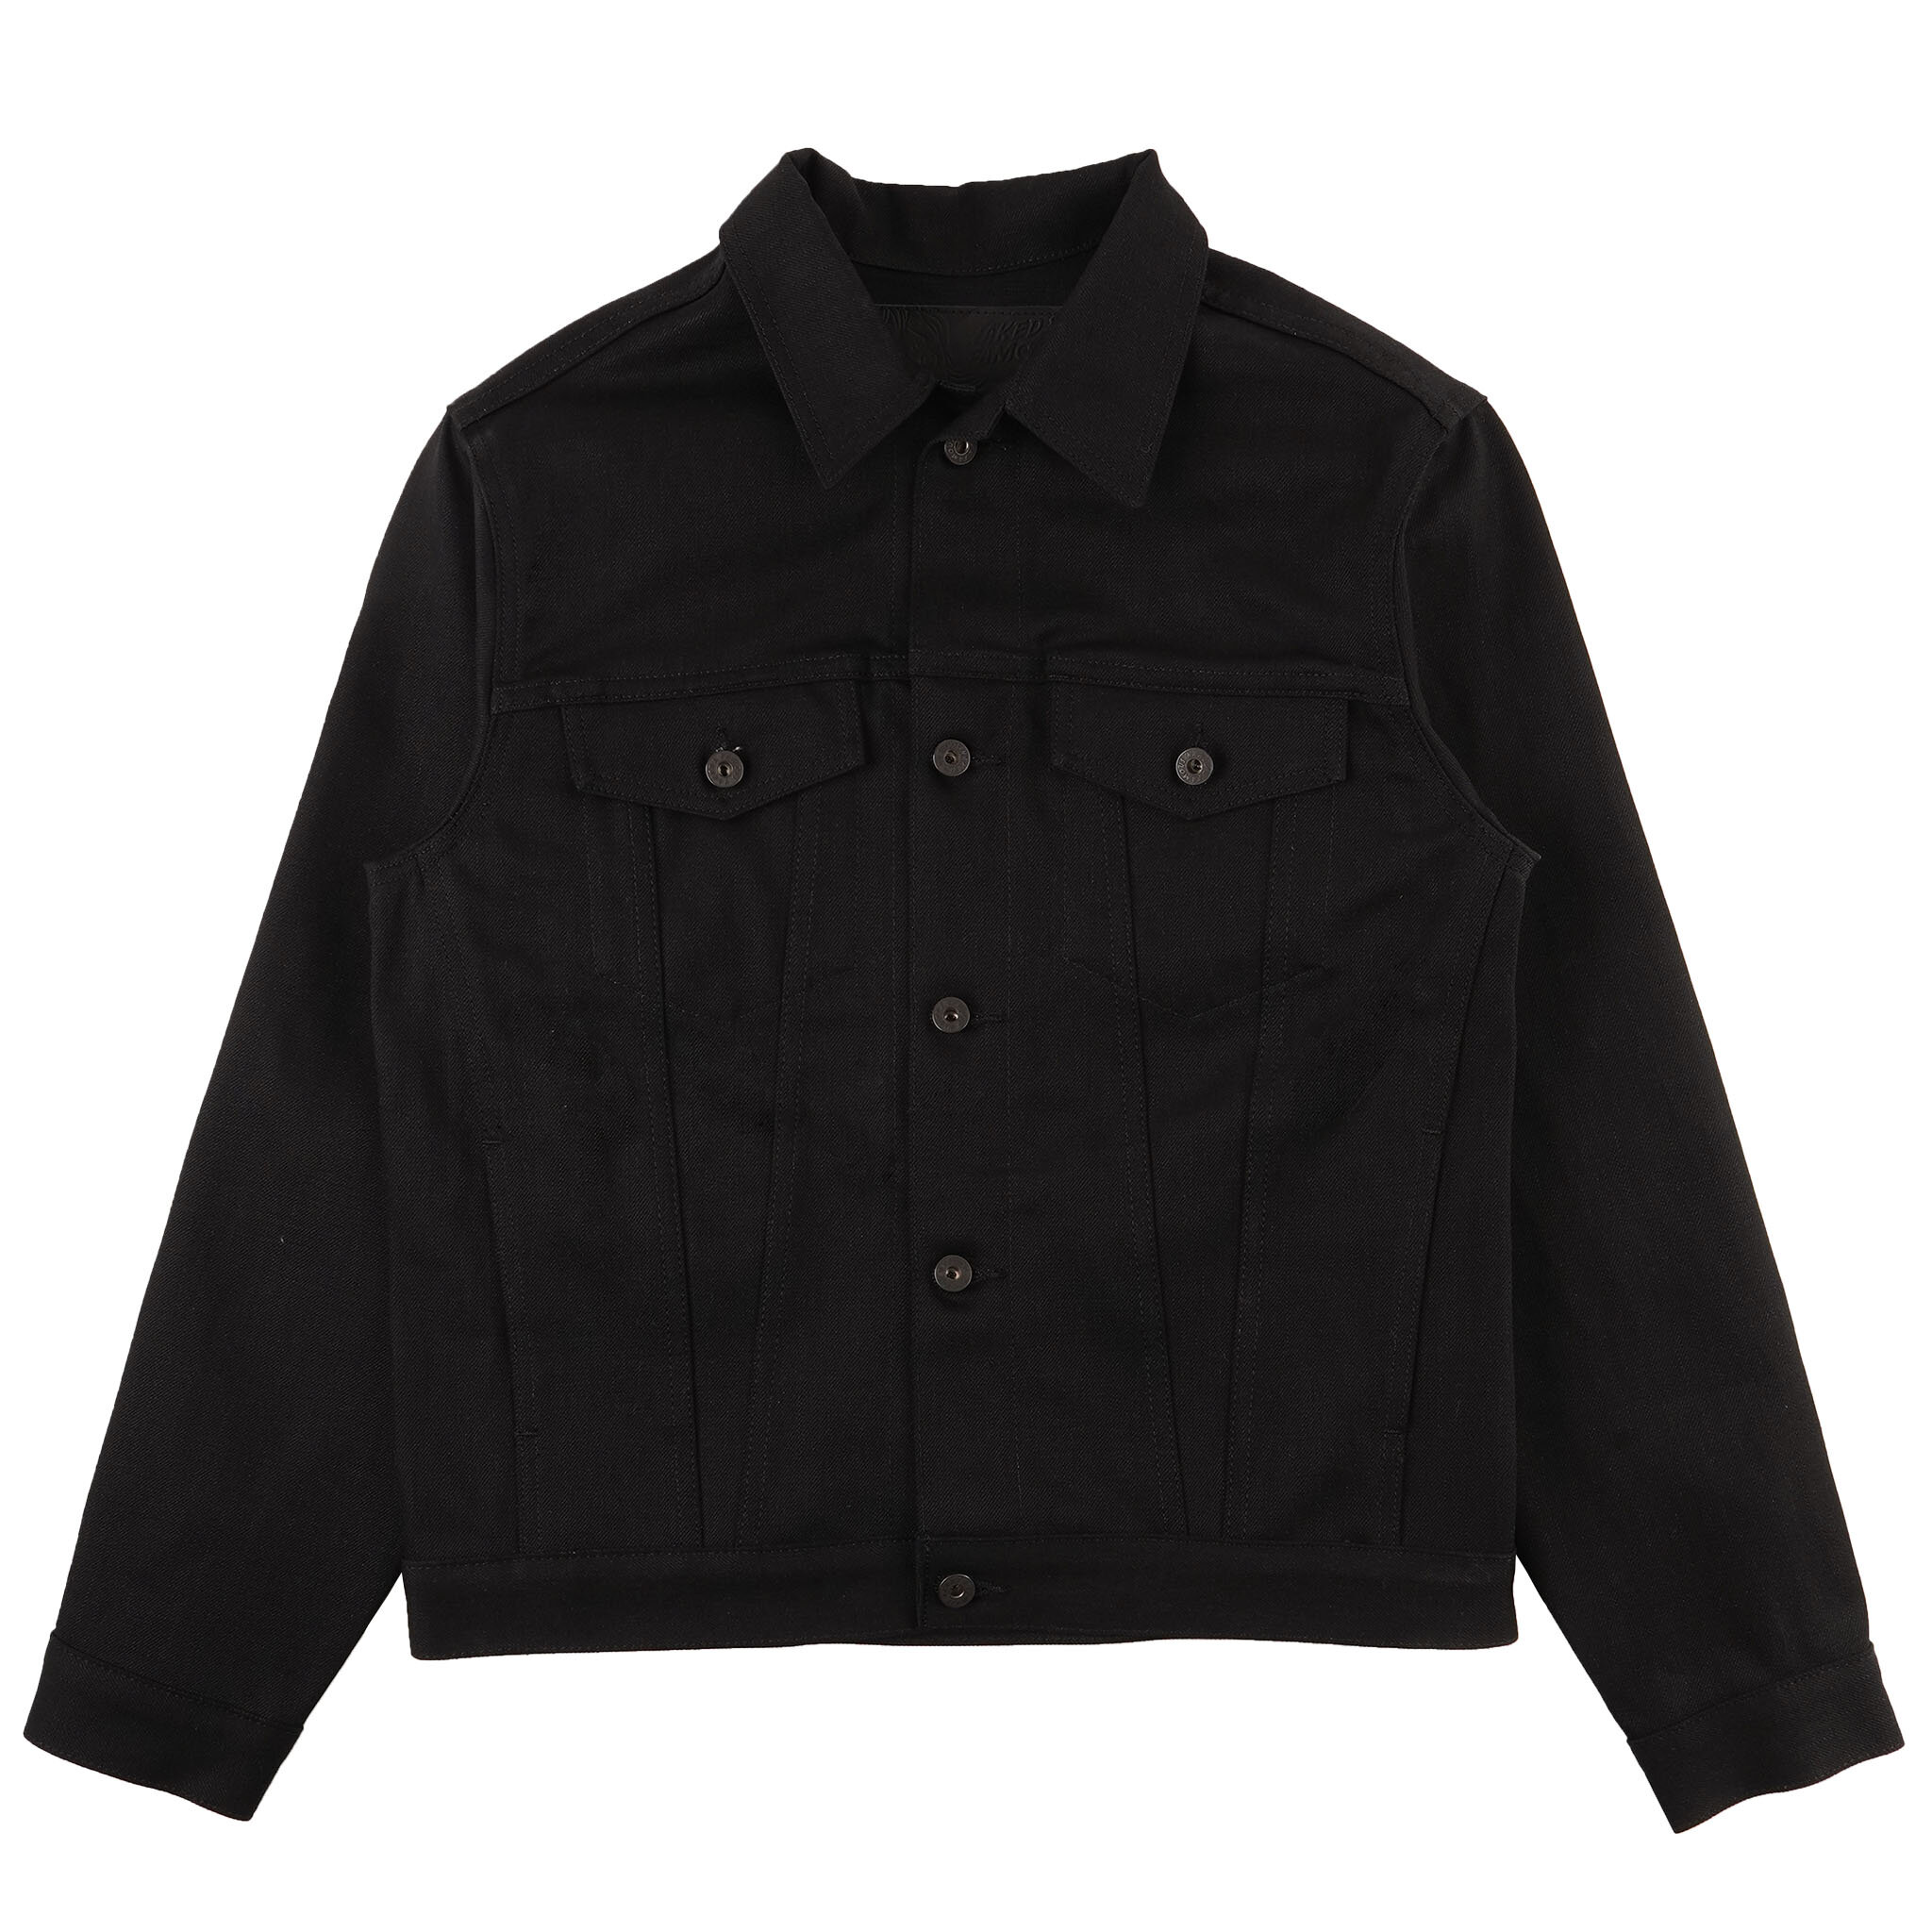  Solid Black Selvedge Denim Jacket - front 